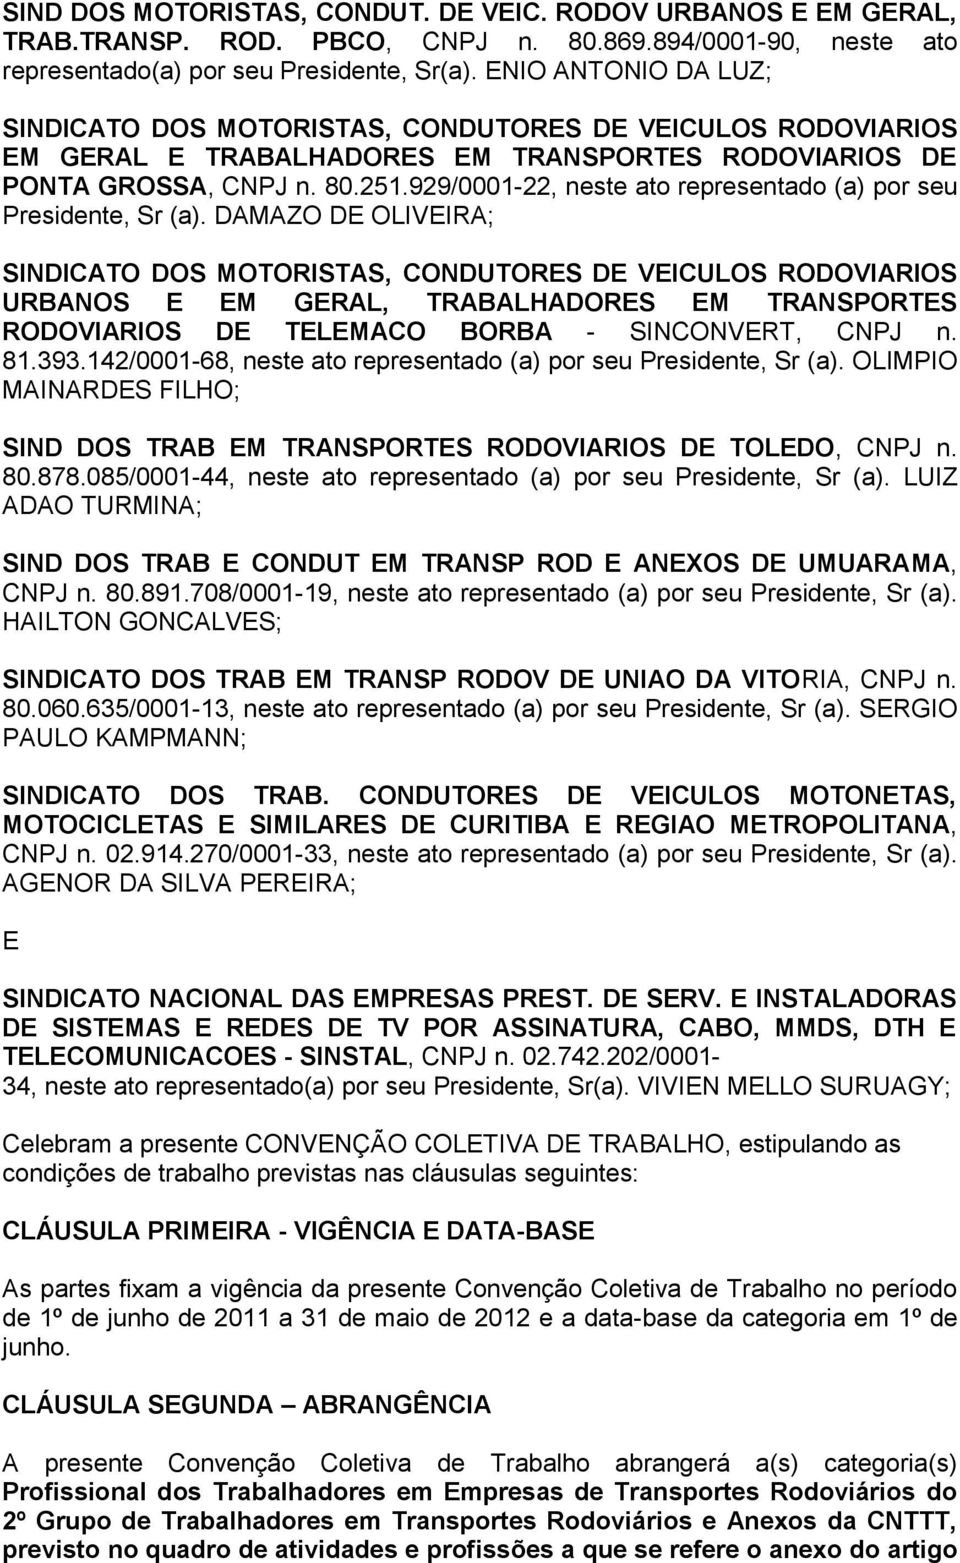 DAMAZO DE OLIVEIRA; URBANOS E EM GERAL, TRABALHADORES EM TRANSPORTES RODOVIARIOS DE TELEMACO BORBA - SINCONVERT, CNPJ n. 81.393.142/0001-68, neste ato representado (a) por seu, Sr (a).